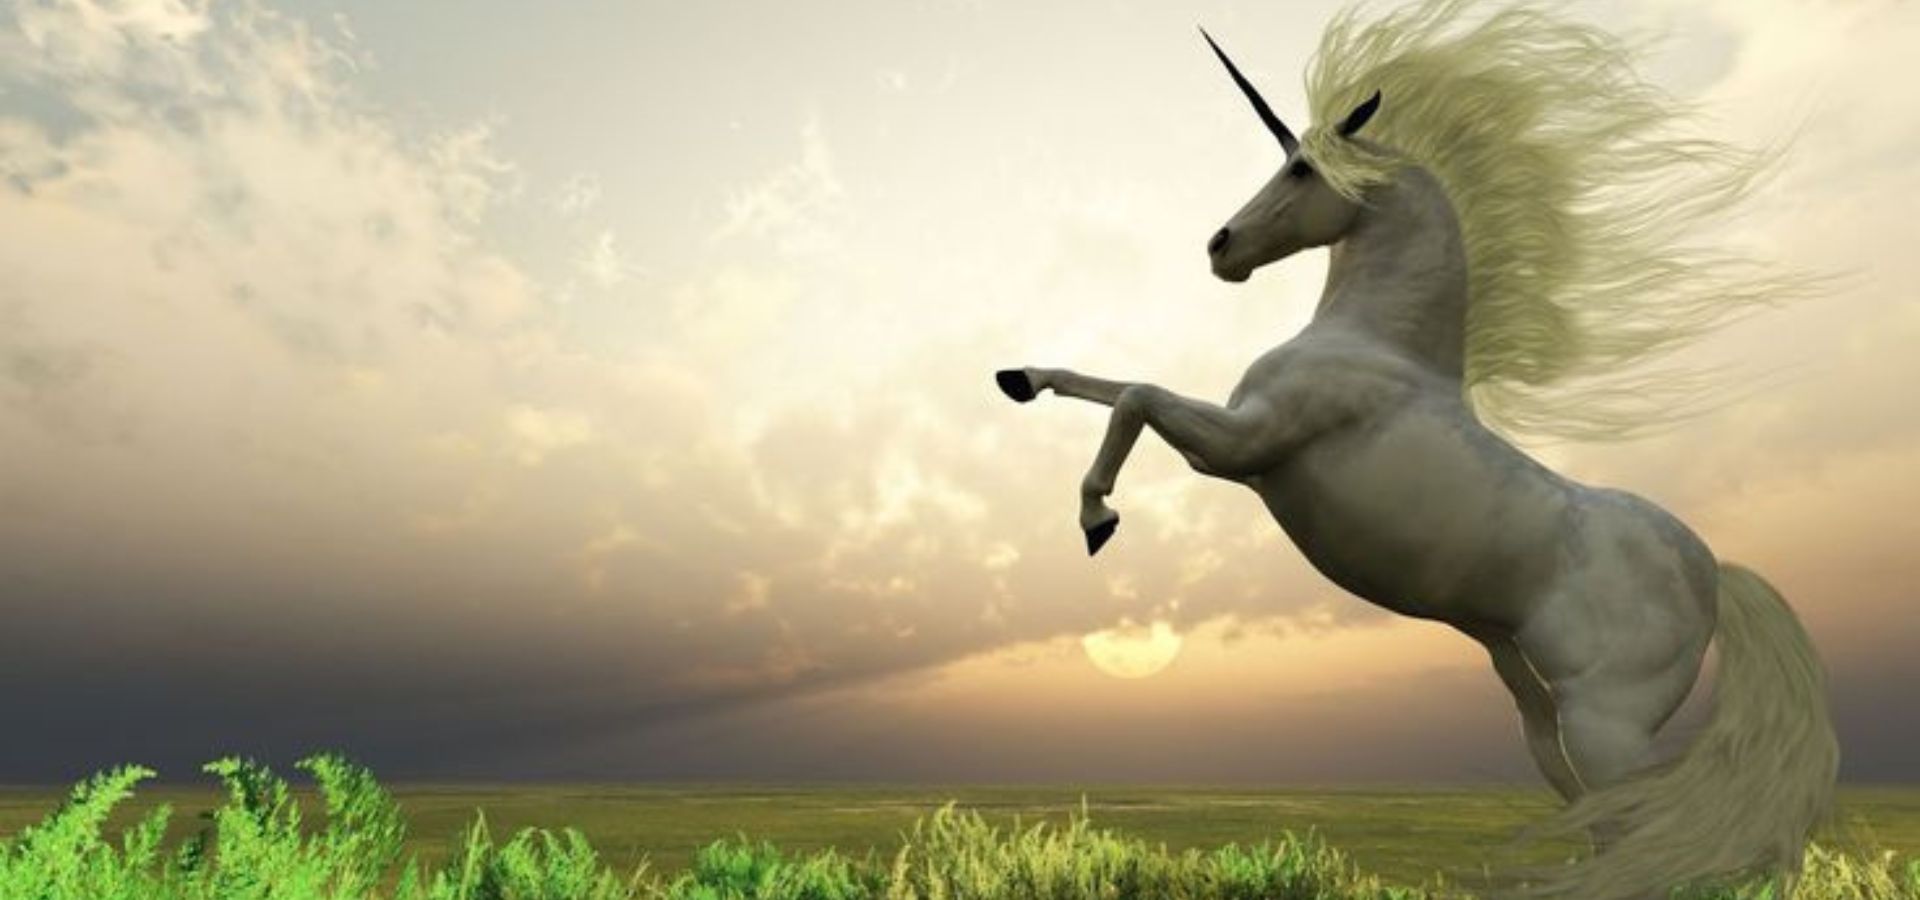 Orígenes místicos: ¿De dónde viene la historia de los unicornios?